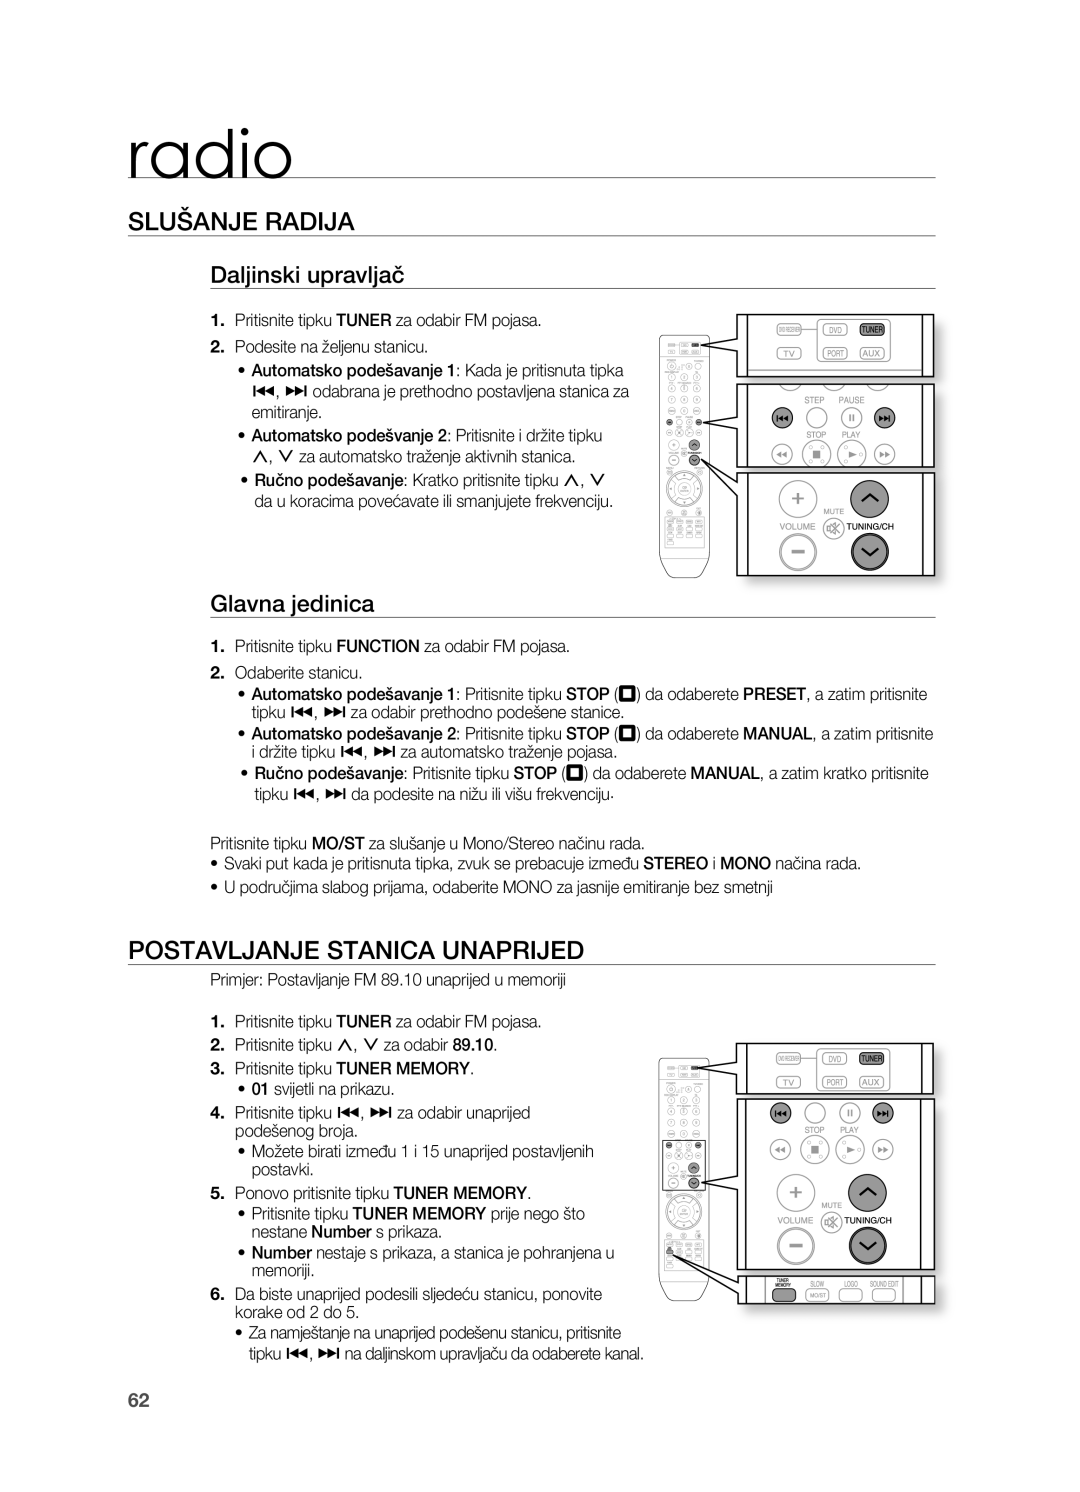 Samsung HT-TZ315R/EDC manual radio, SLUŠANjE RADIjA, PoSTAVLjANjE STANICA UNAPRIjED, Daljinski upravljač, glavna jedinica 